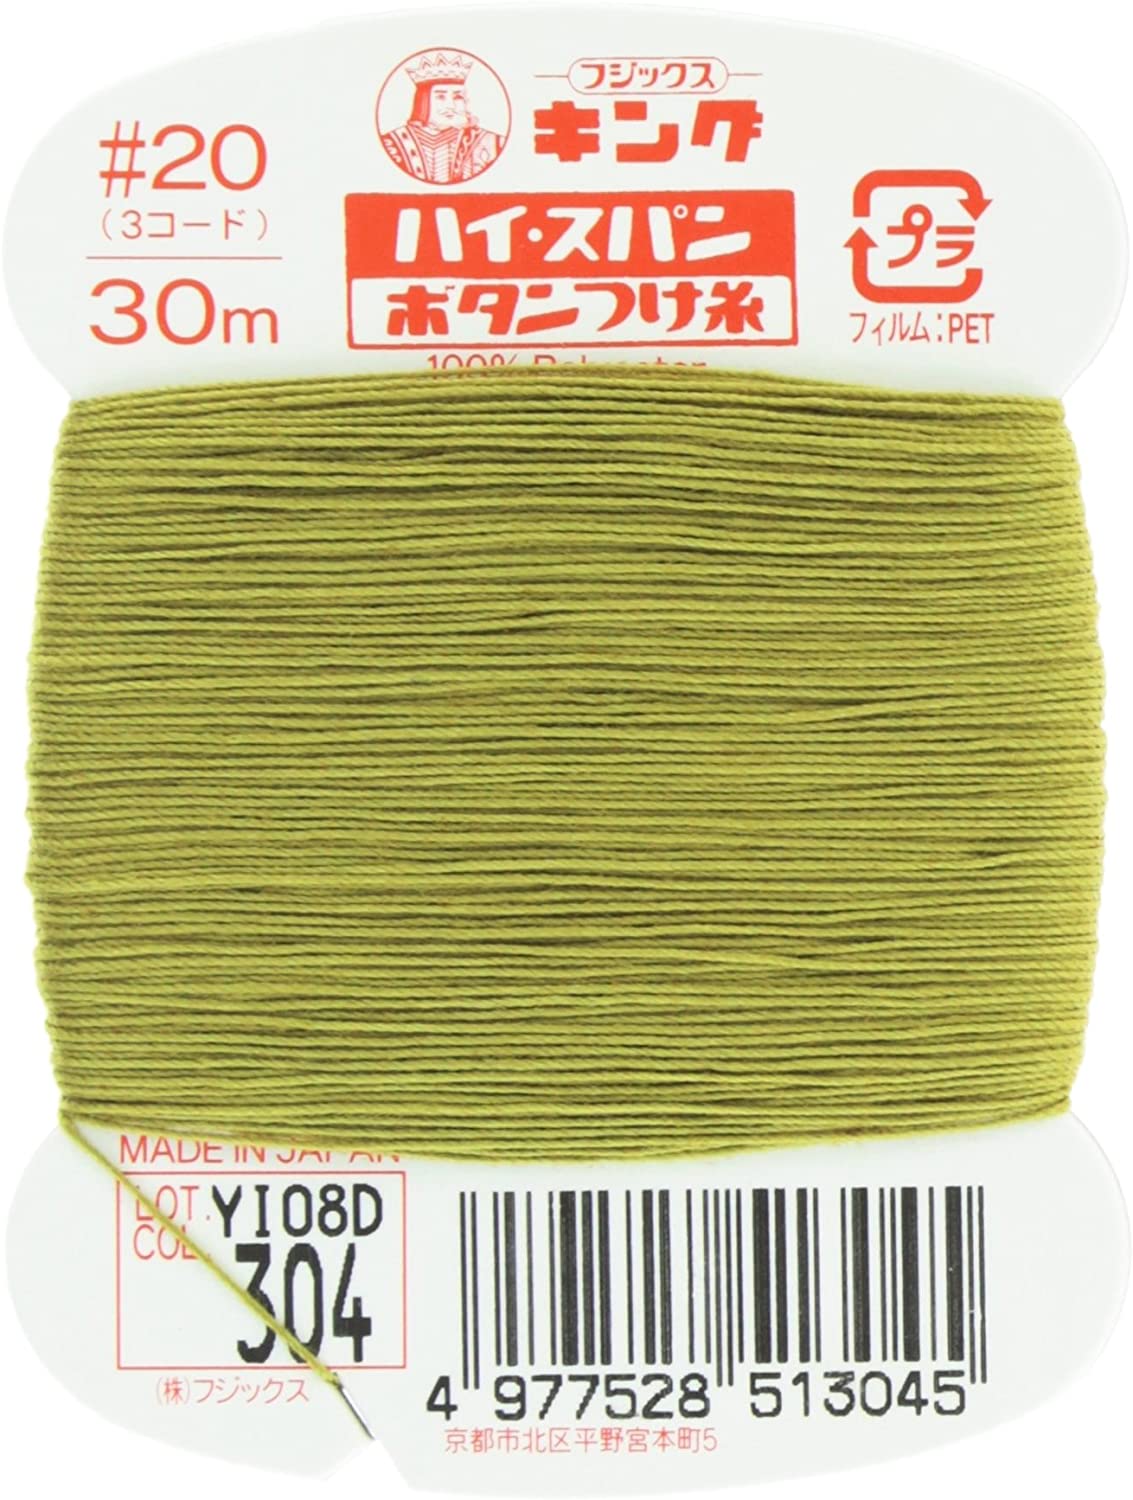 FK51-304 ハイスパンボタンつけ糸 #20 30m巻 (枚)